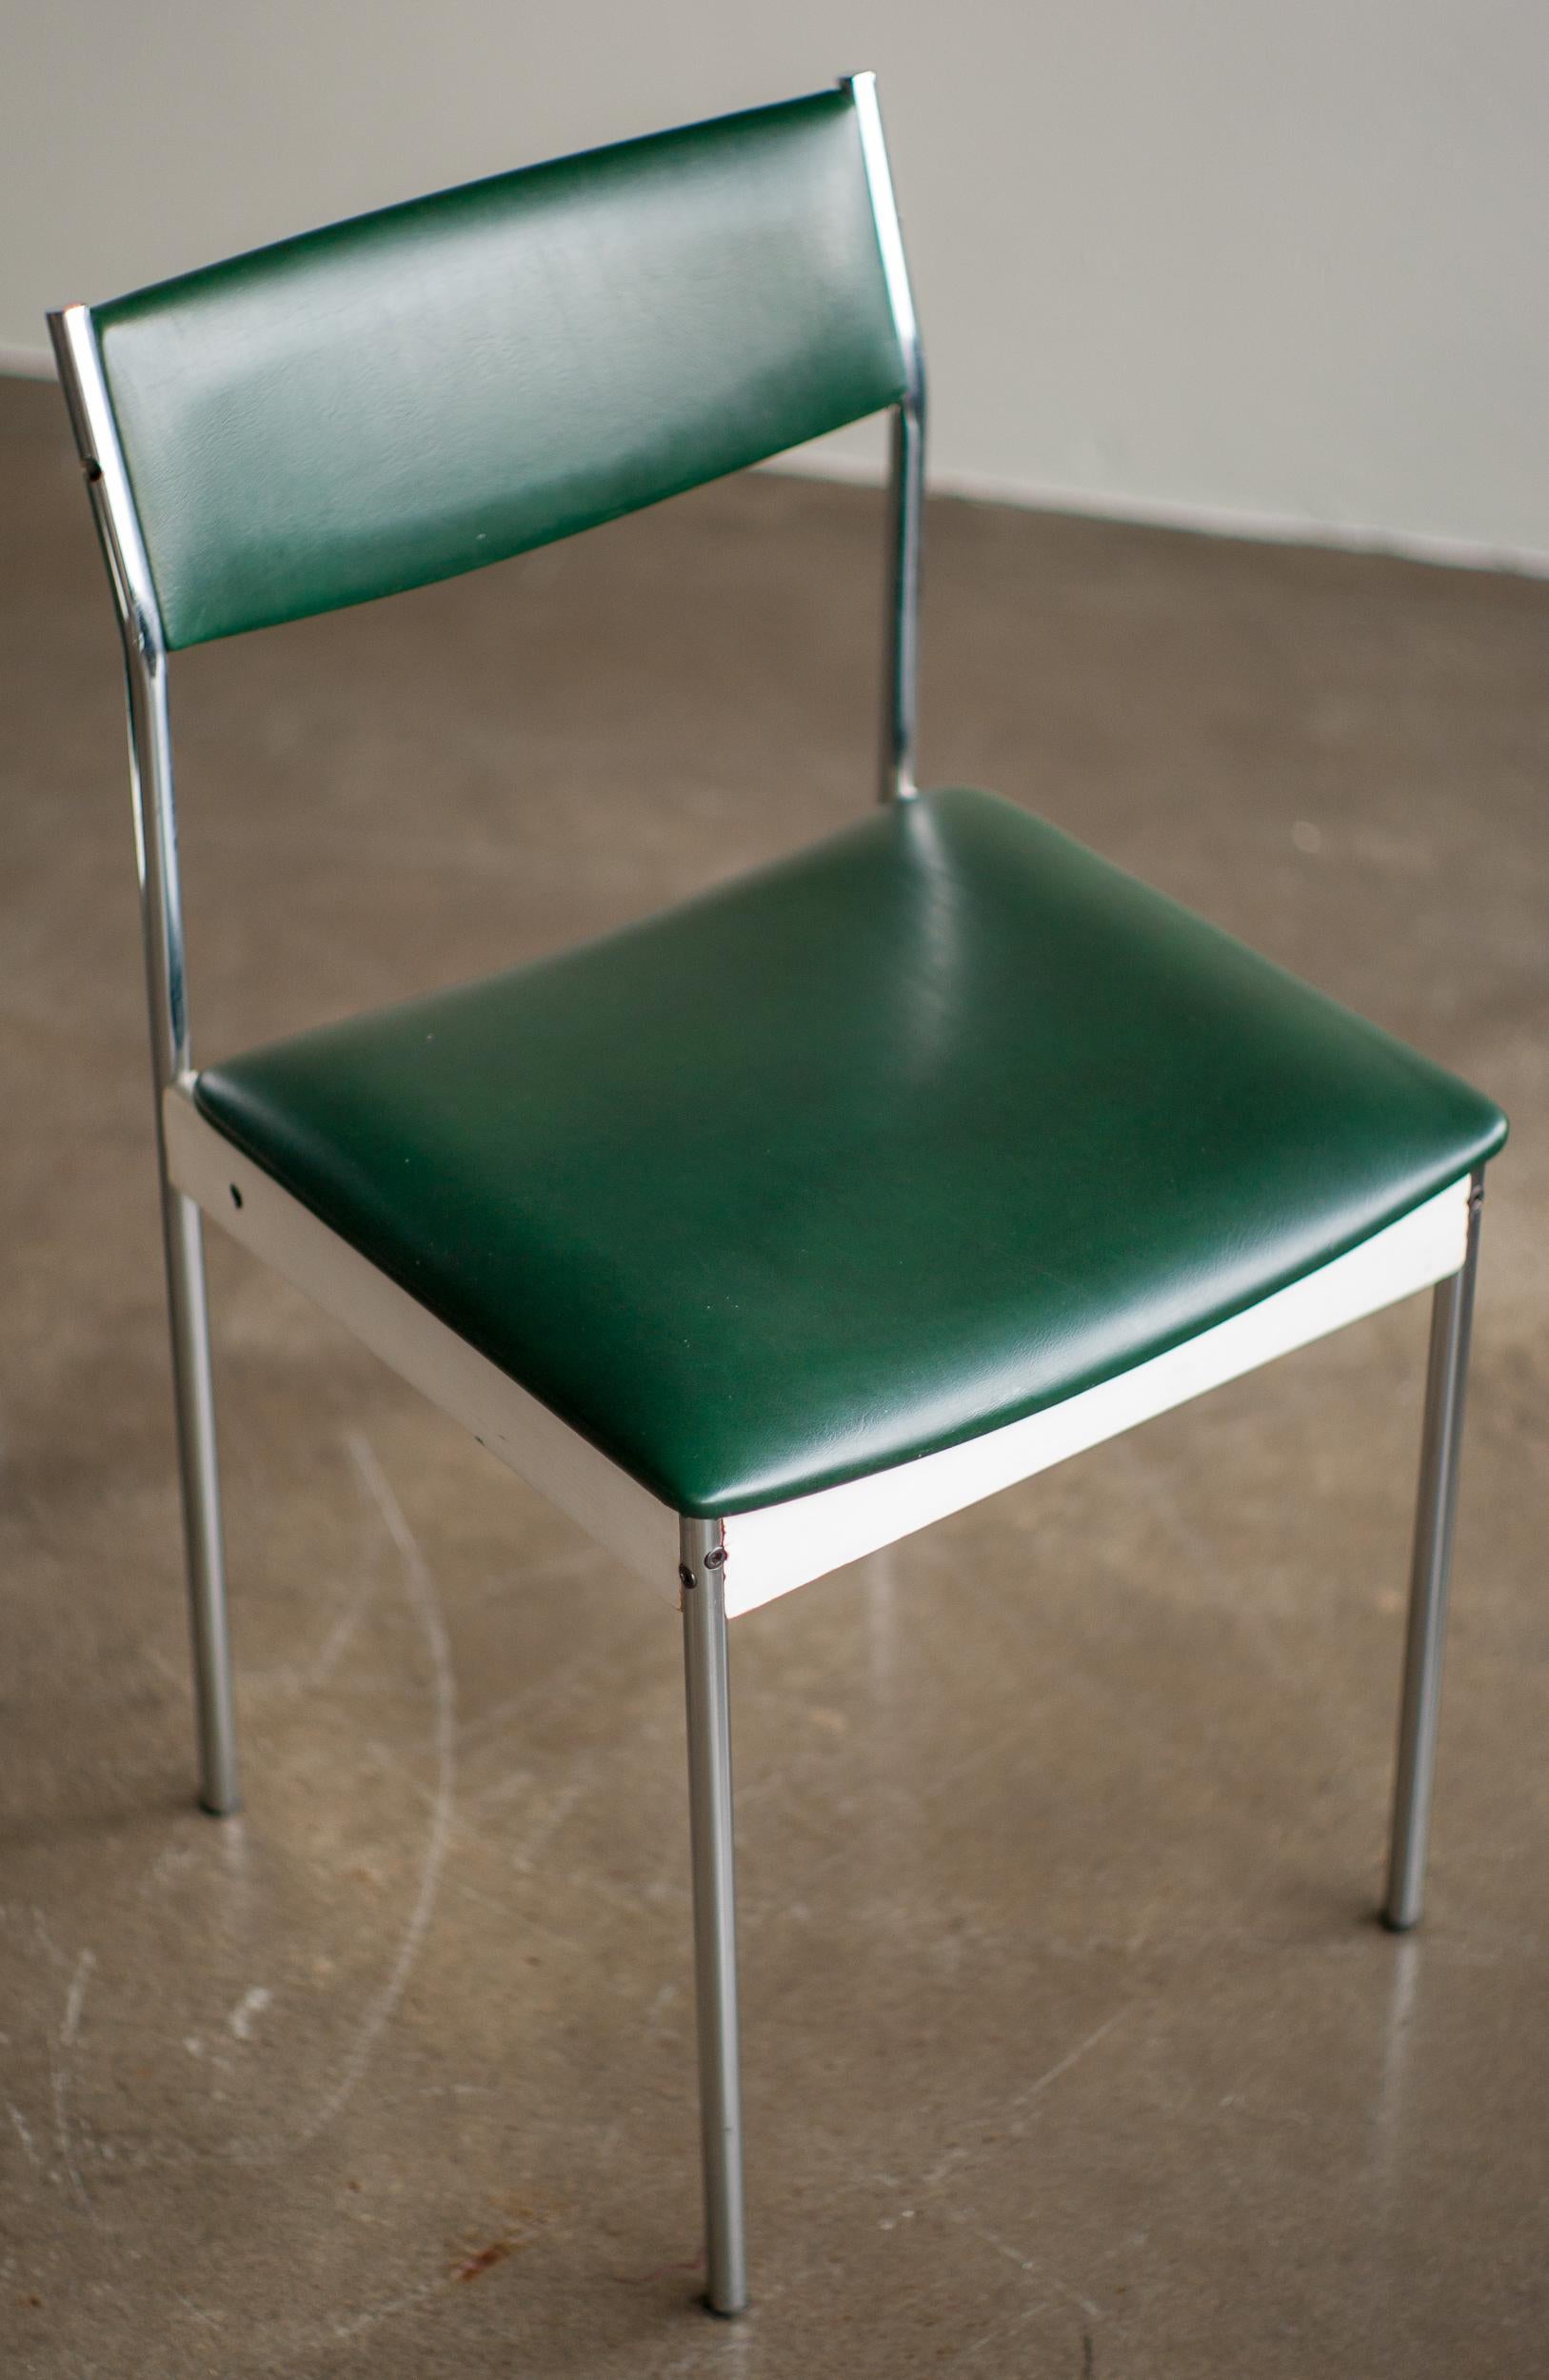 Minimalistisches, aber sehr komfortables Mid-Century Modern Set mit 4 Esszimmerstühlen mit verchromten Stahlrohrbeinen und weiß lackiertem Sperrholzsitz und -rücken, gepolstert mit dunkelgrünem Naugahyde. 
Zum Patent angemeldeter Stempel, Hersteller